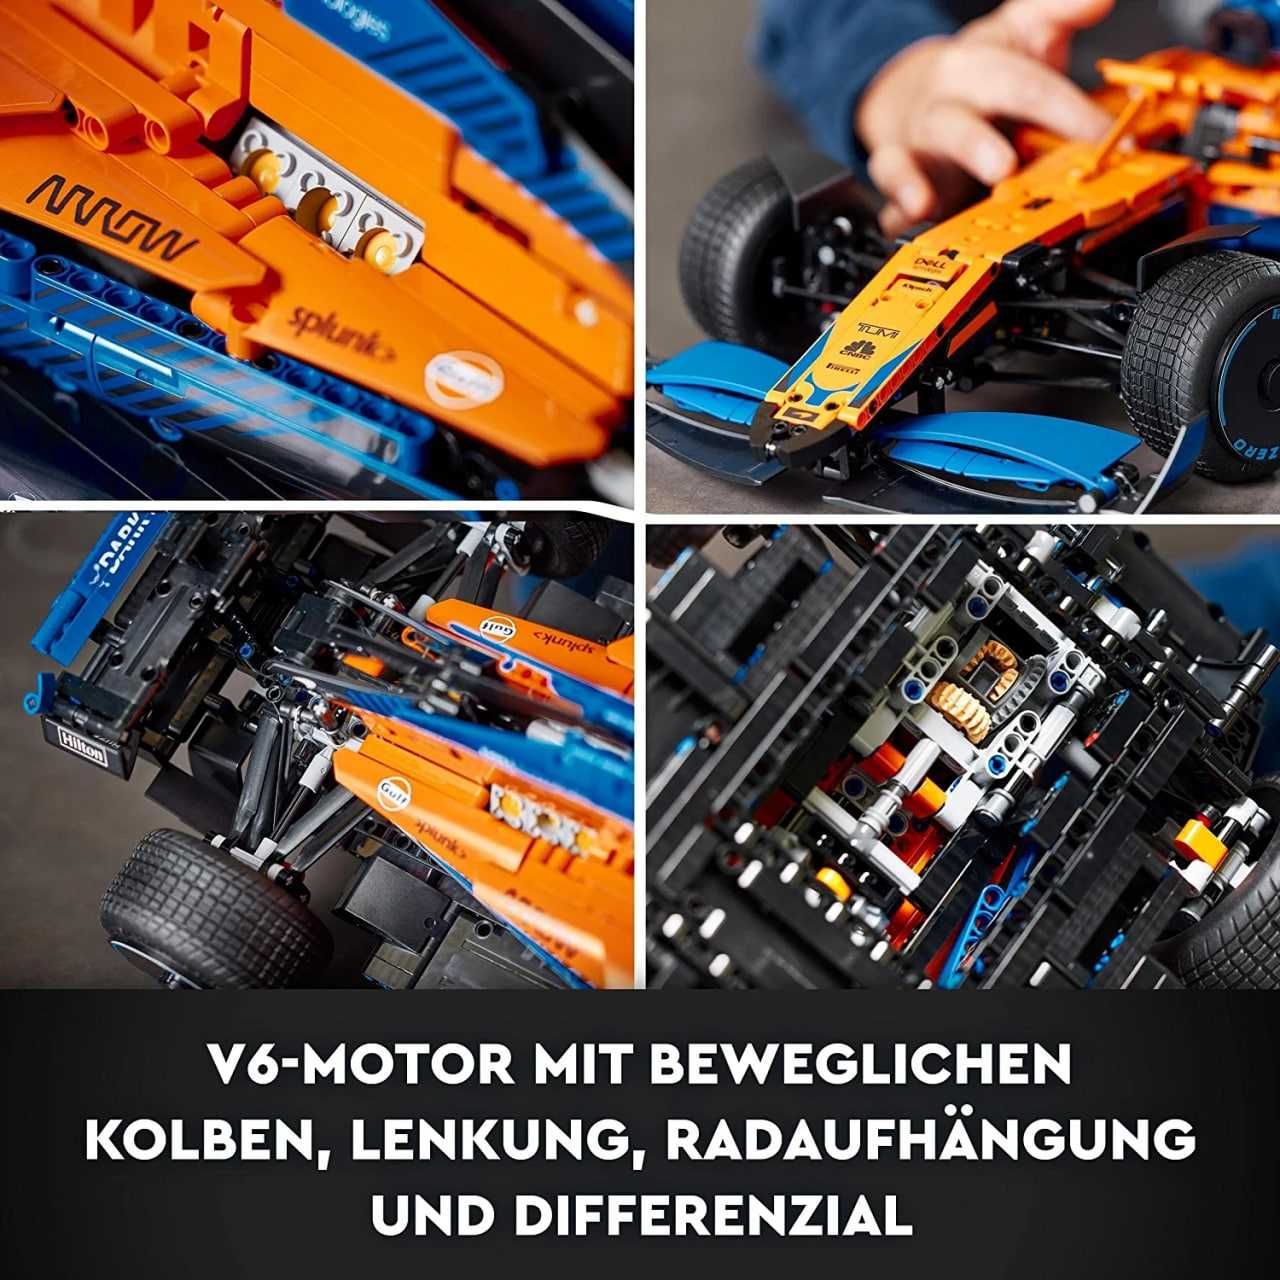 Конструктор LEGO 42141 Technic McLaren Formula 1 Racing Car! Новый !